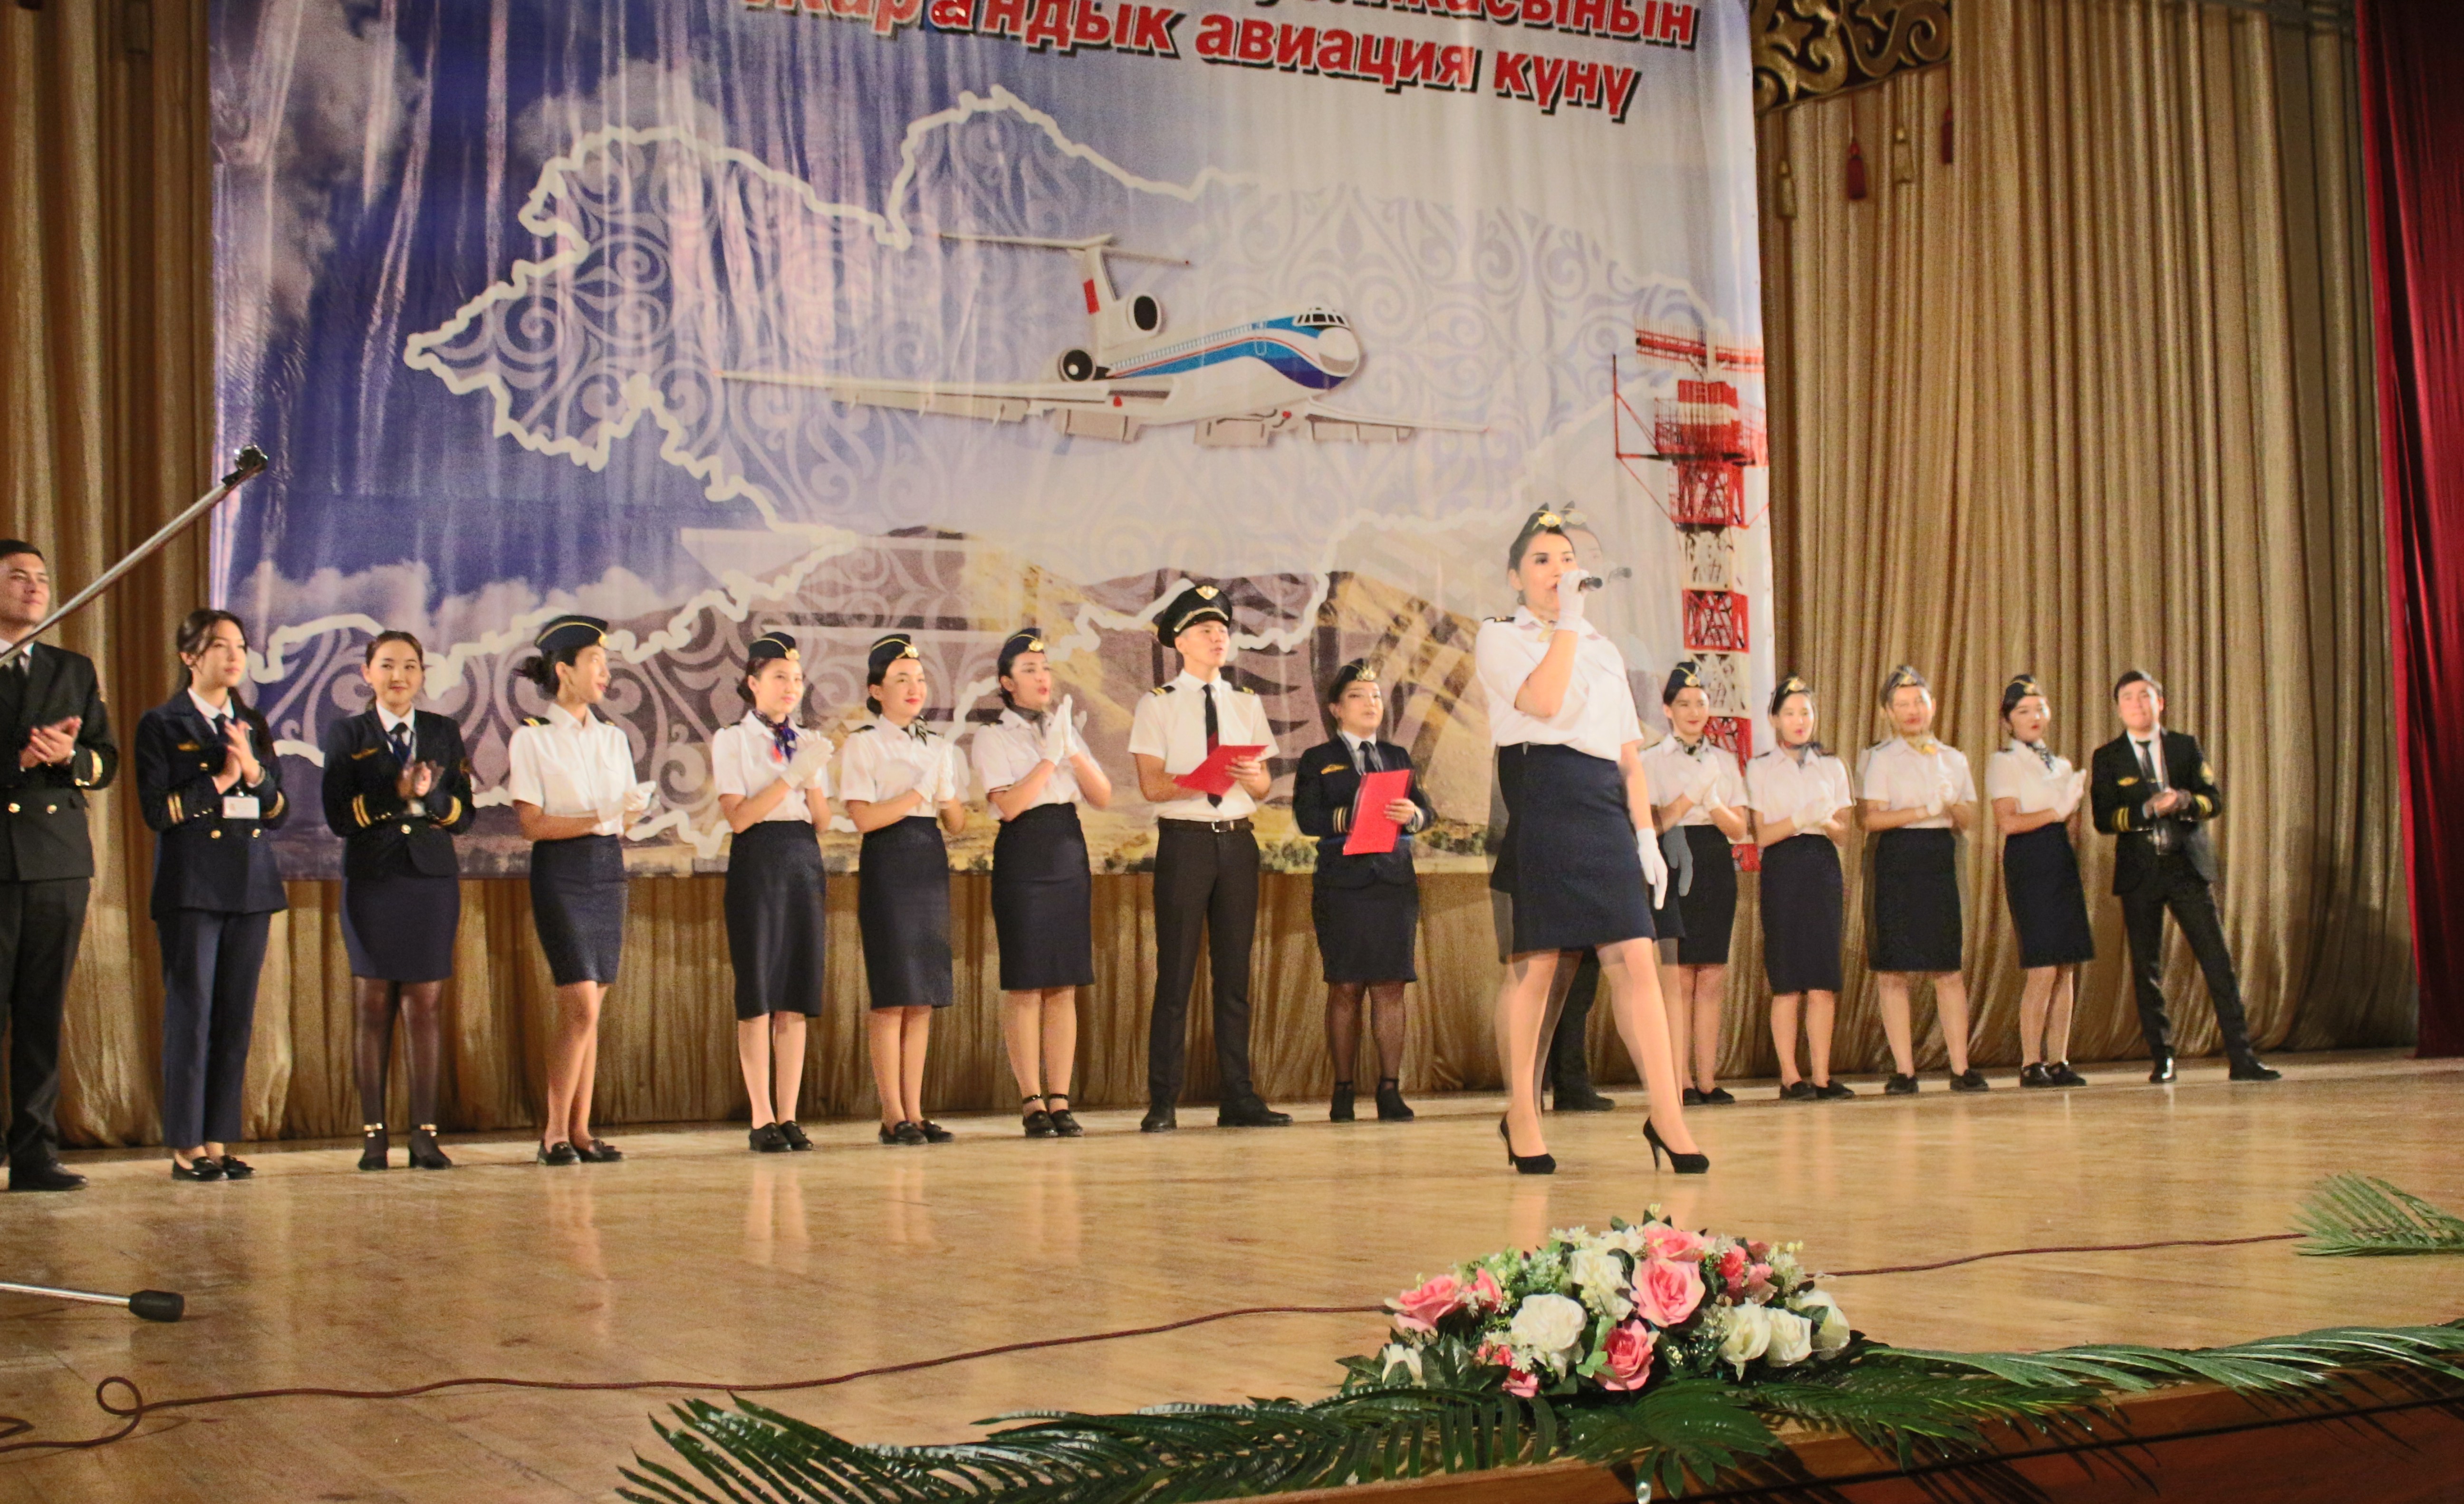 7 октября 2019 года в Центре  юношества и детства «Сейтек» проведено торжественное мероприятие, посвященное празднованию 86 годовщины гражданской авиации Кыргызстана